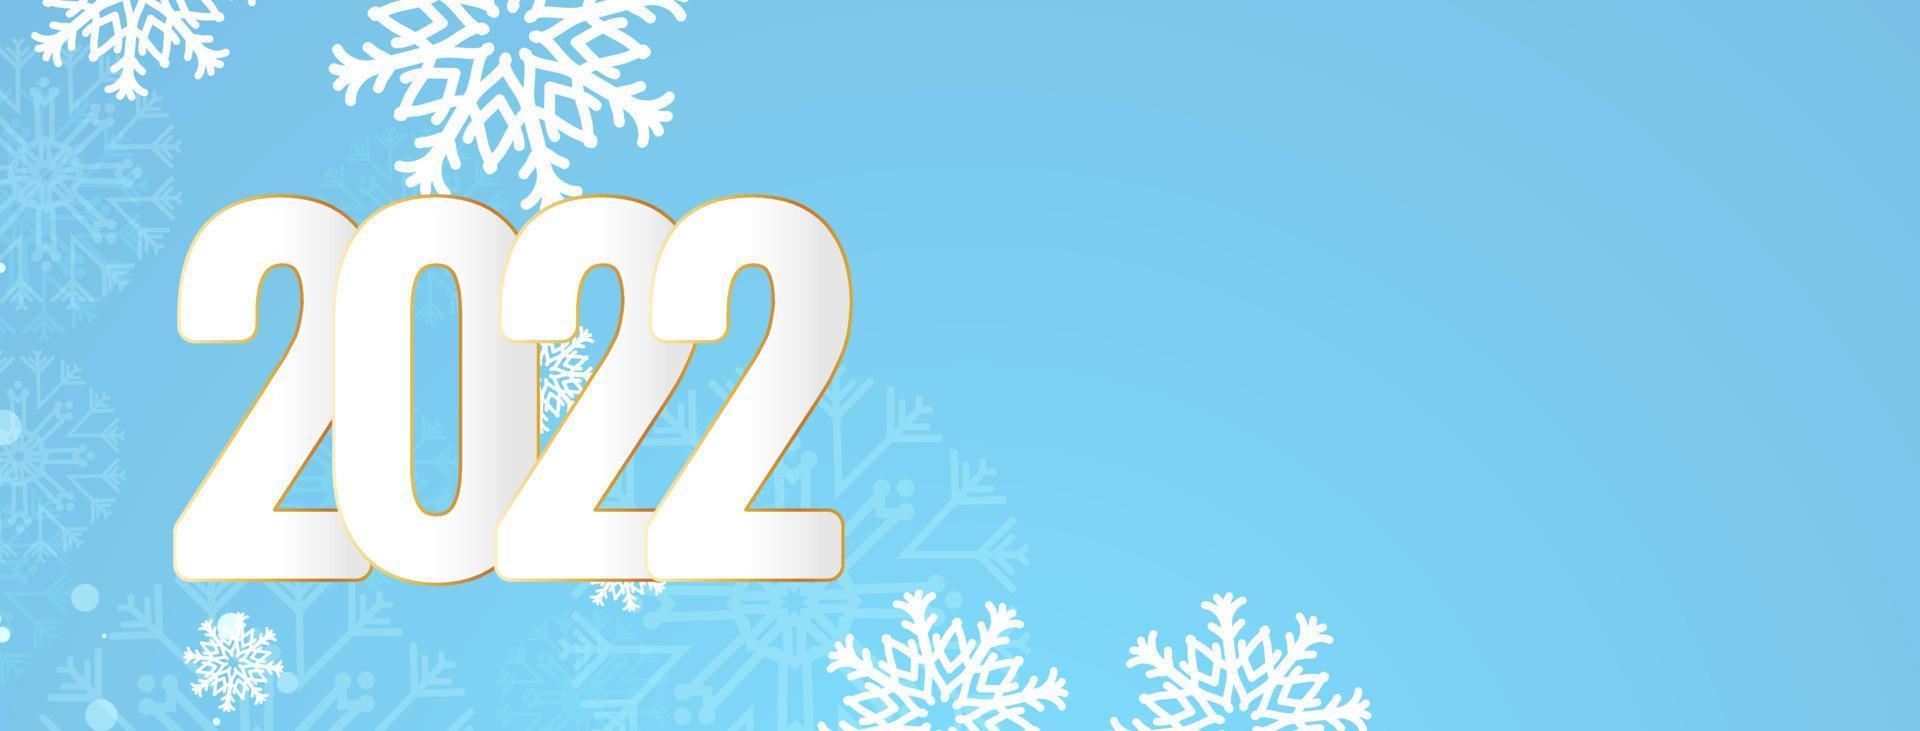 feliz año nuevo 2022 diseño de banner azul suave vector